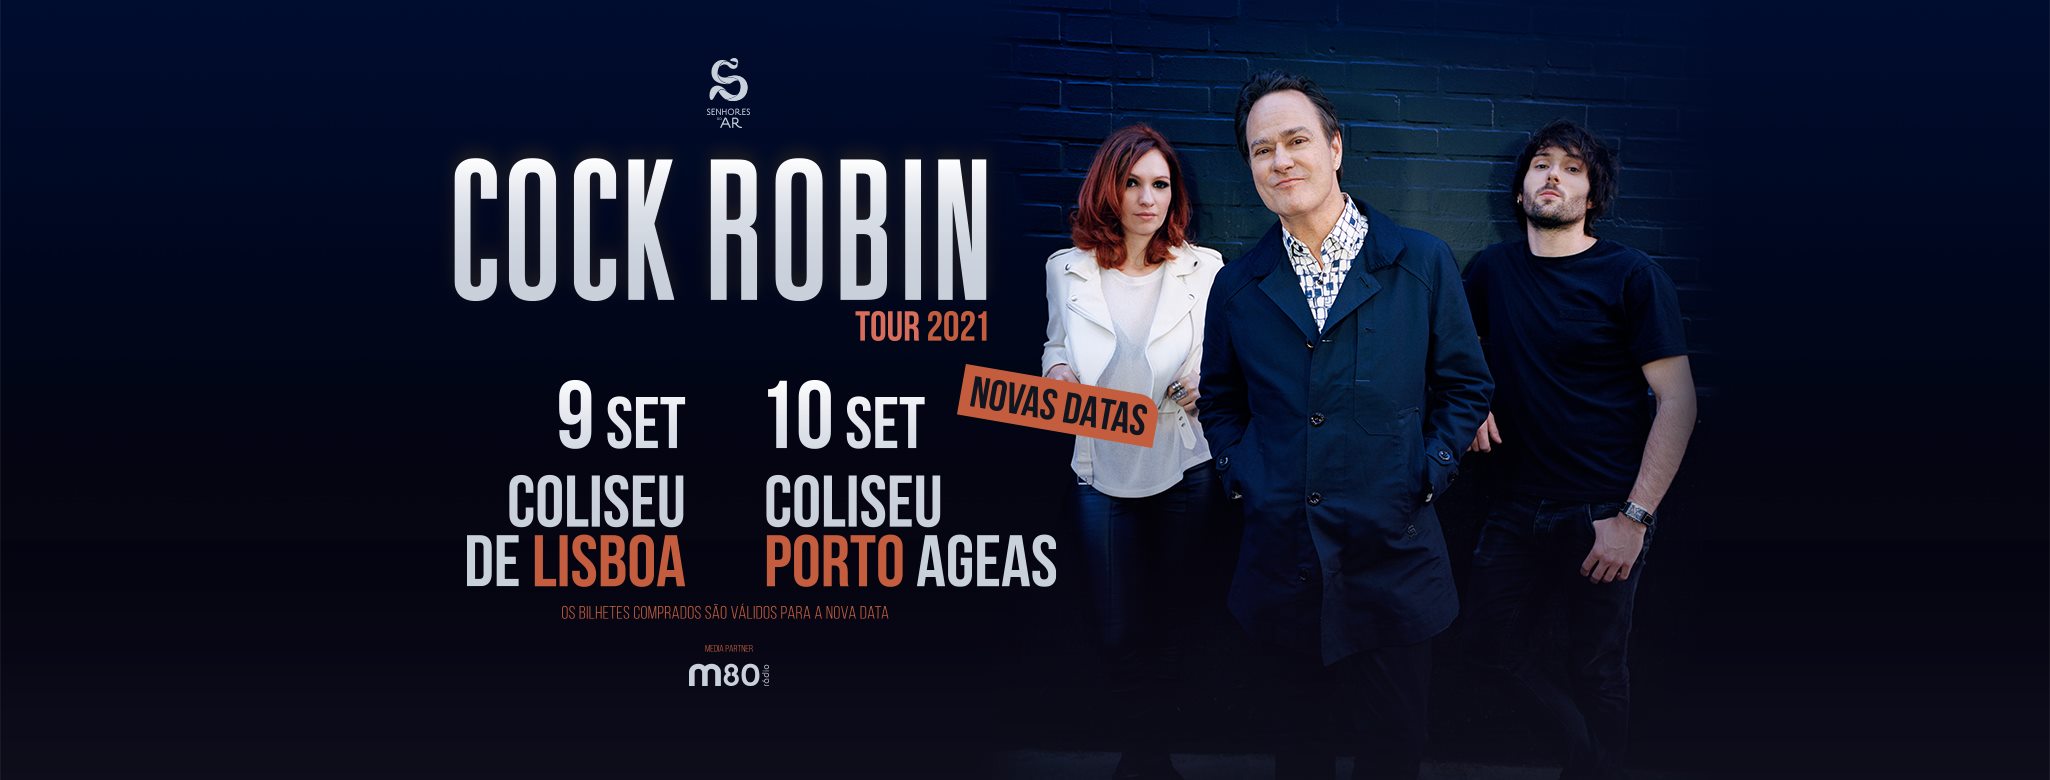 Cock Robin | Coliseu de Lisboa - 9 Setembro